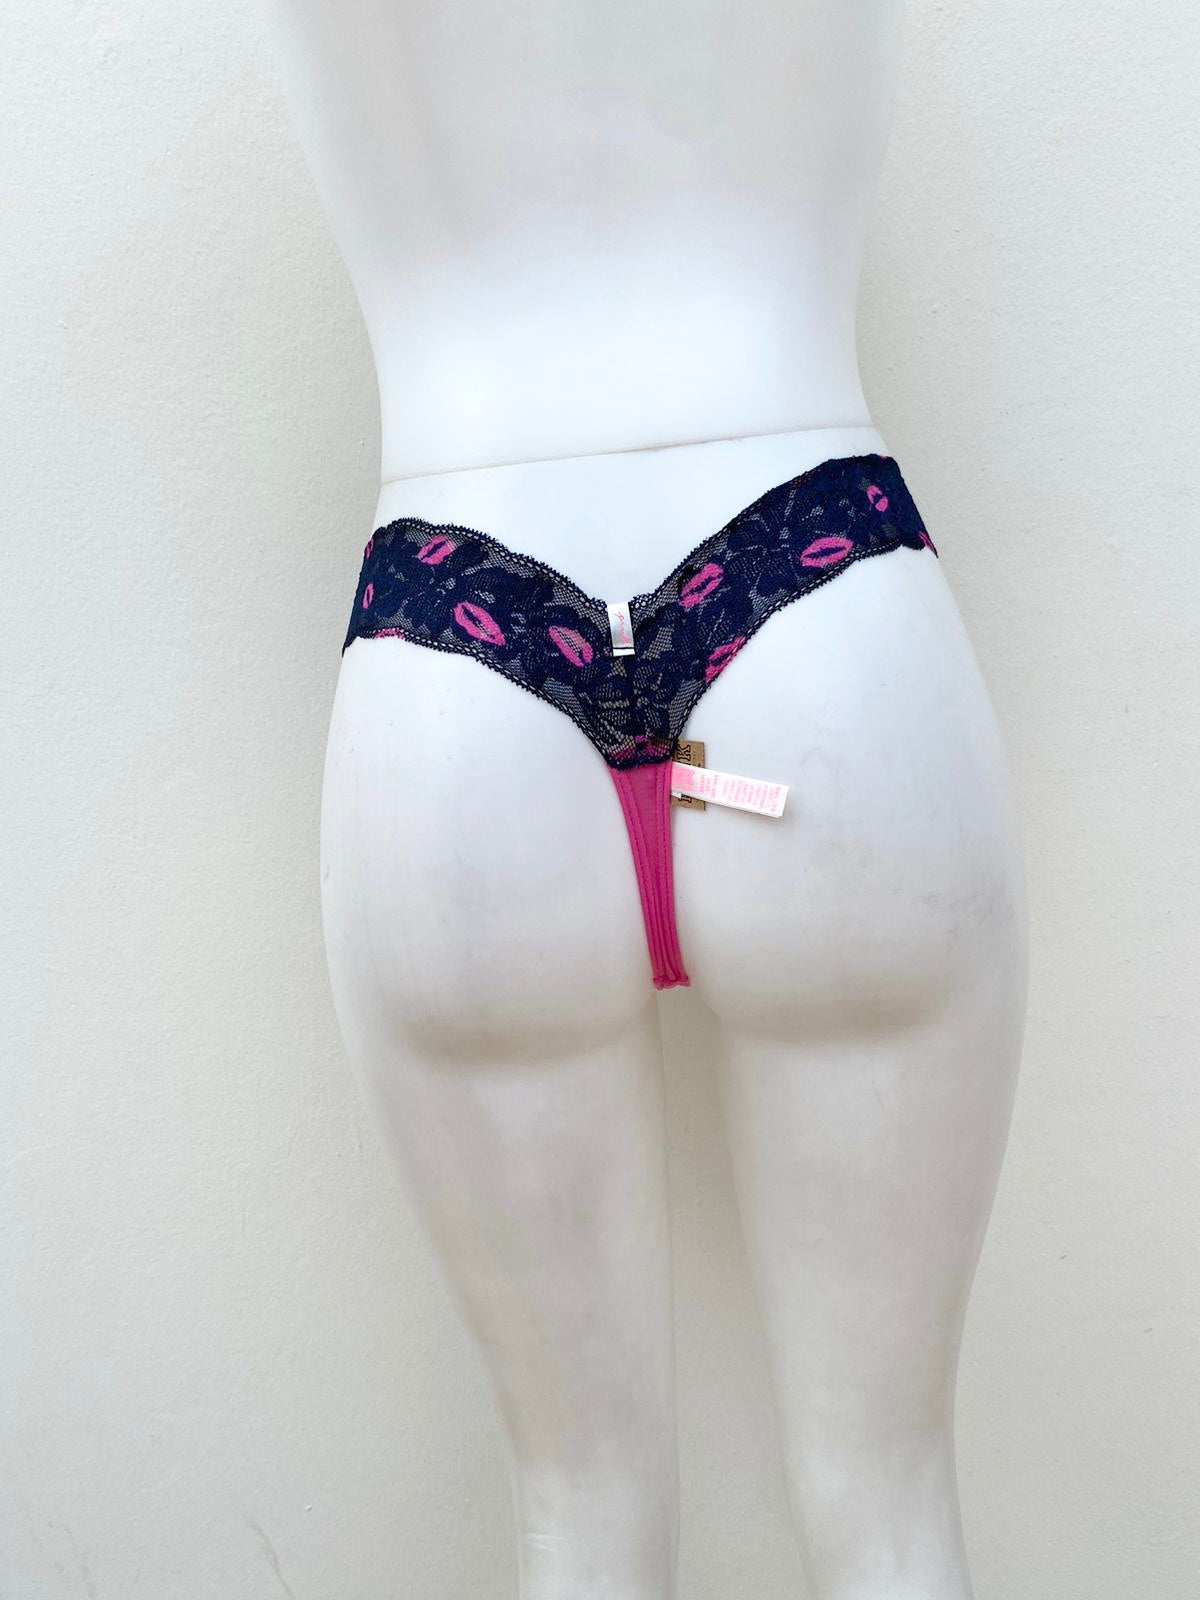 Panti VICTORIA’S Secret Original, color rosa, con encaje azul y con detalles en besos.